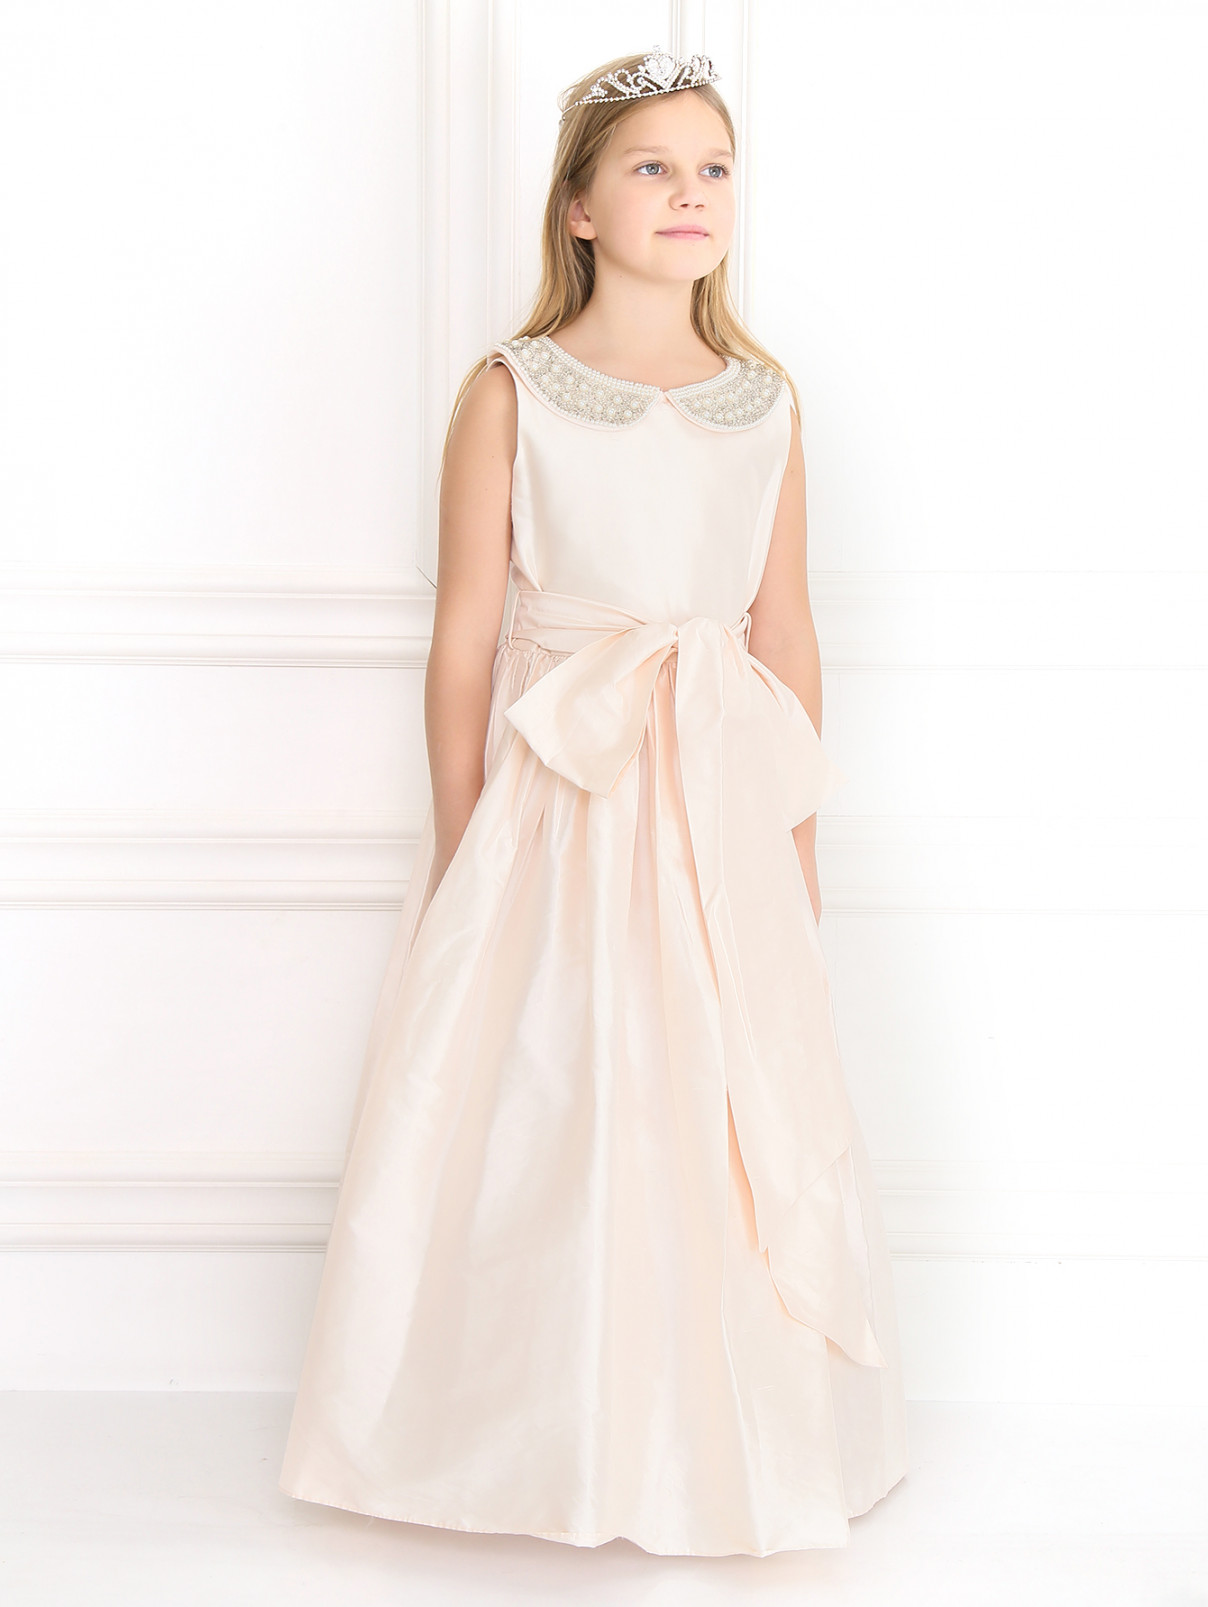 Платье из шелка с пышной юбкой и расшитым воротничком Nicki Macfarlane  –  Модель Общий вид  – Цвет:  Белый